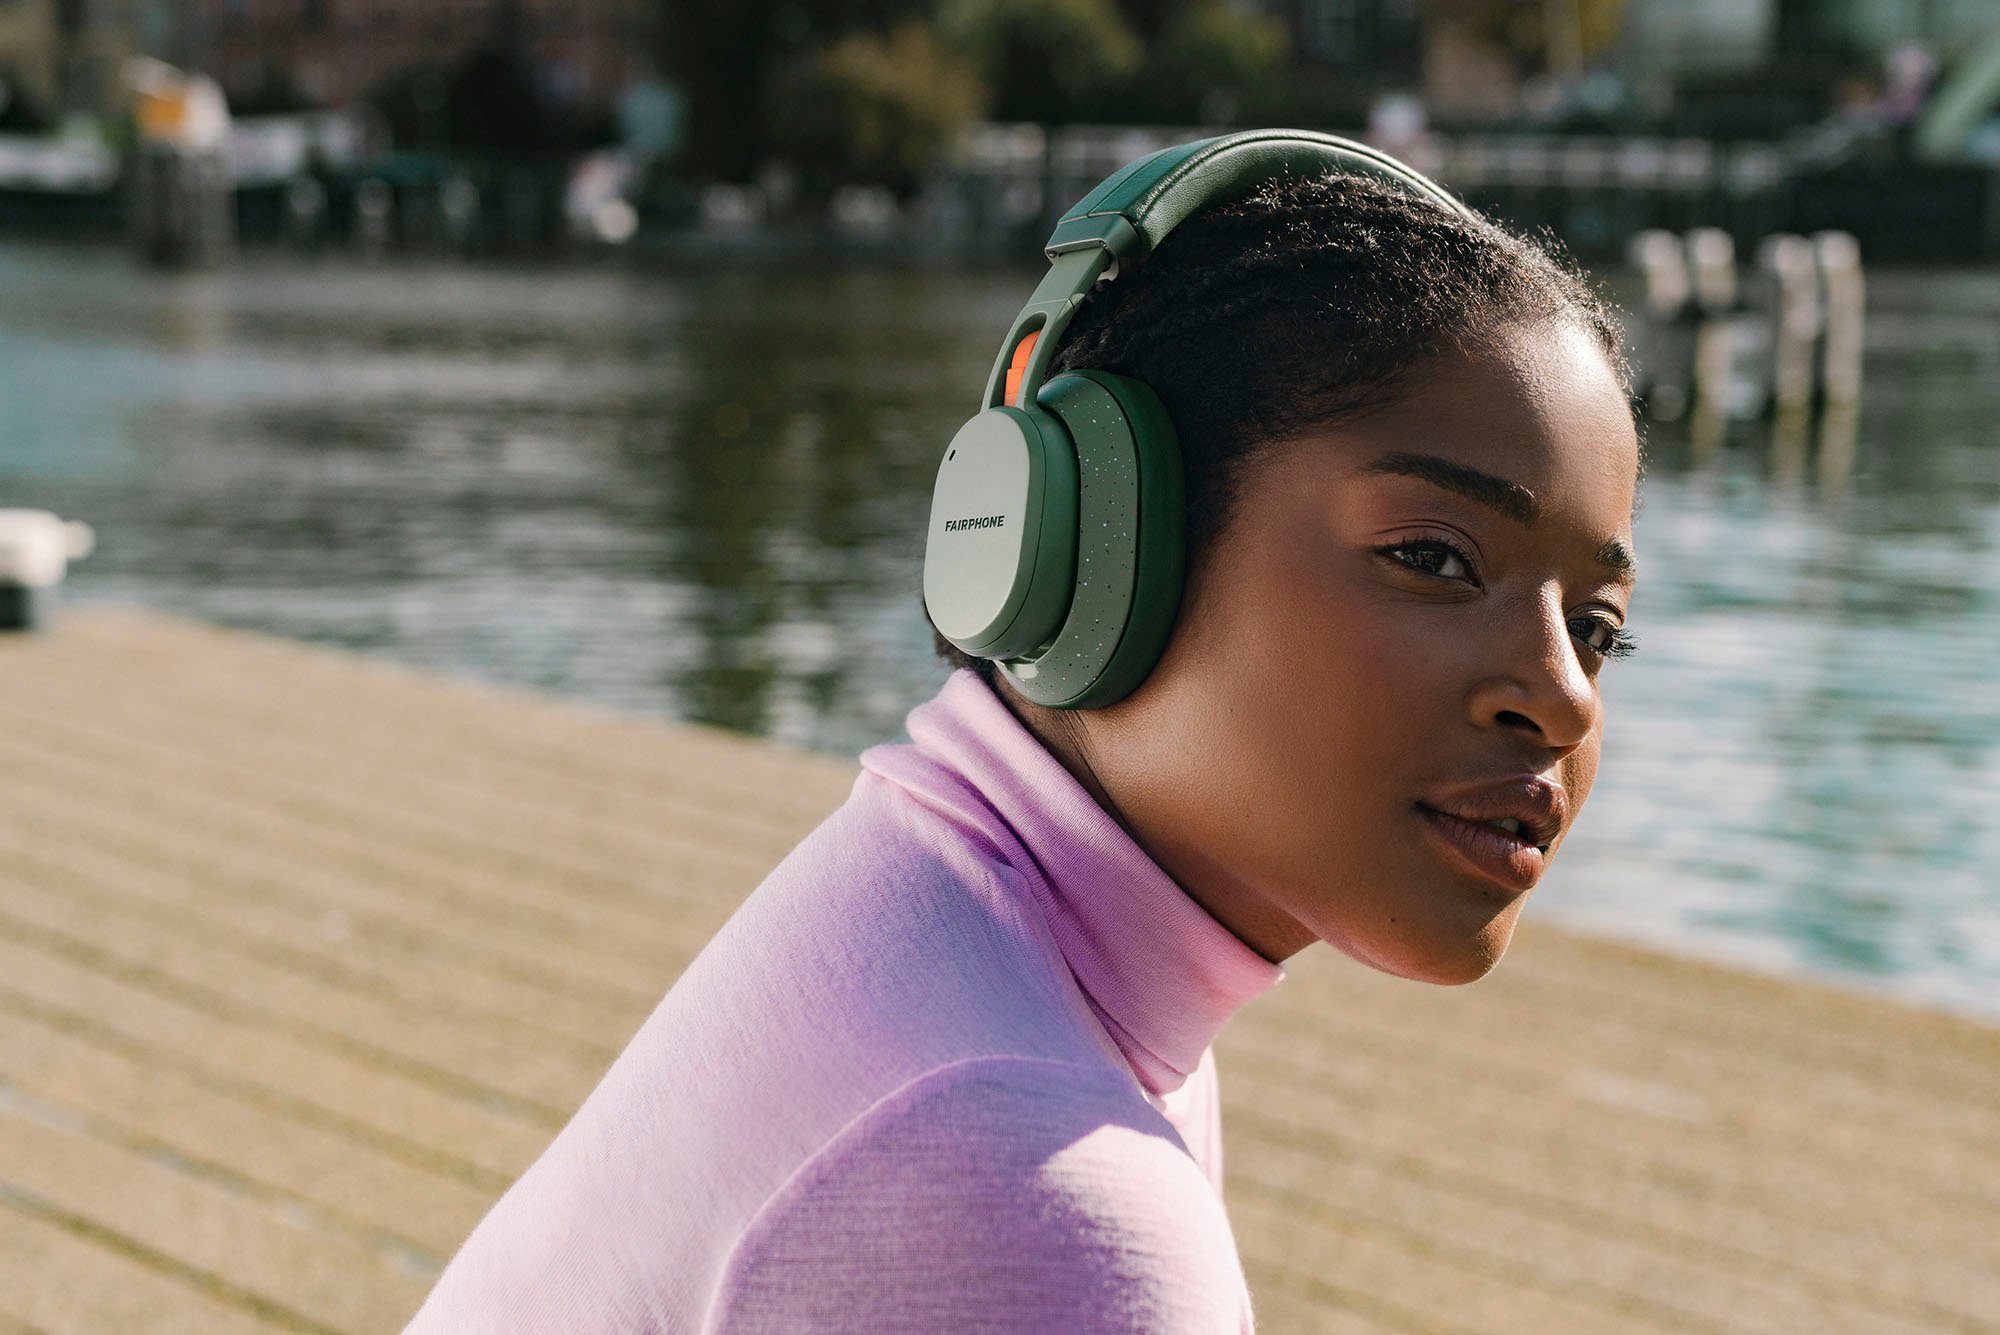 grün Cancelling Over-Ear-Kopfhörer (ANC), Noise (Active Bluetooth) Fairbuds XL Fairphone